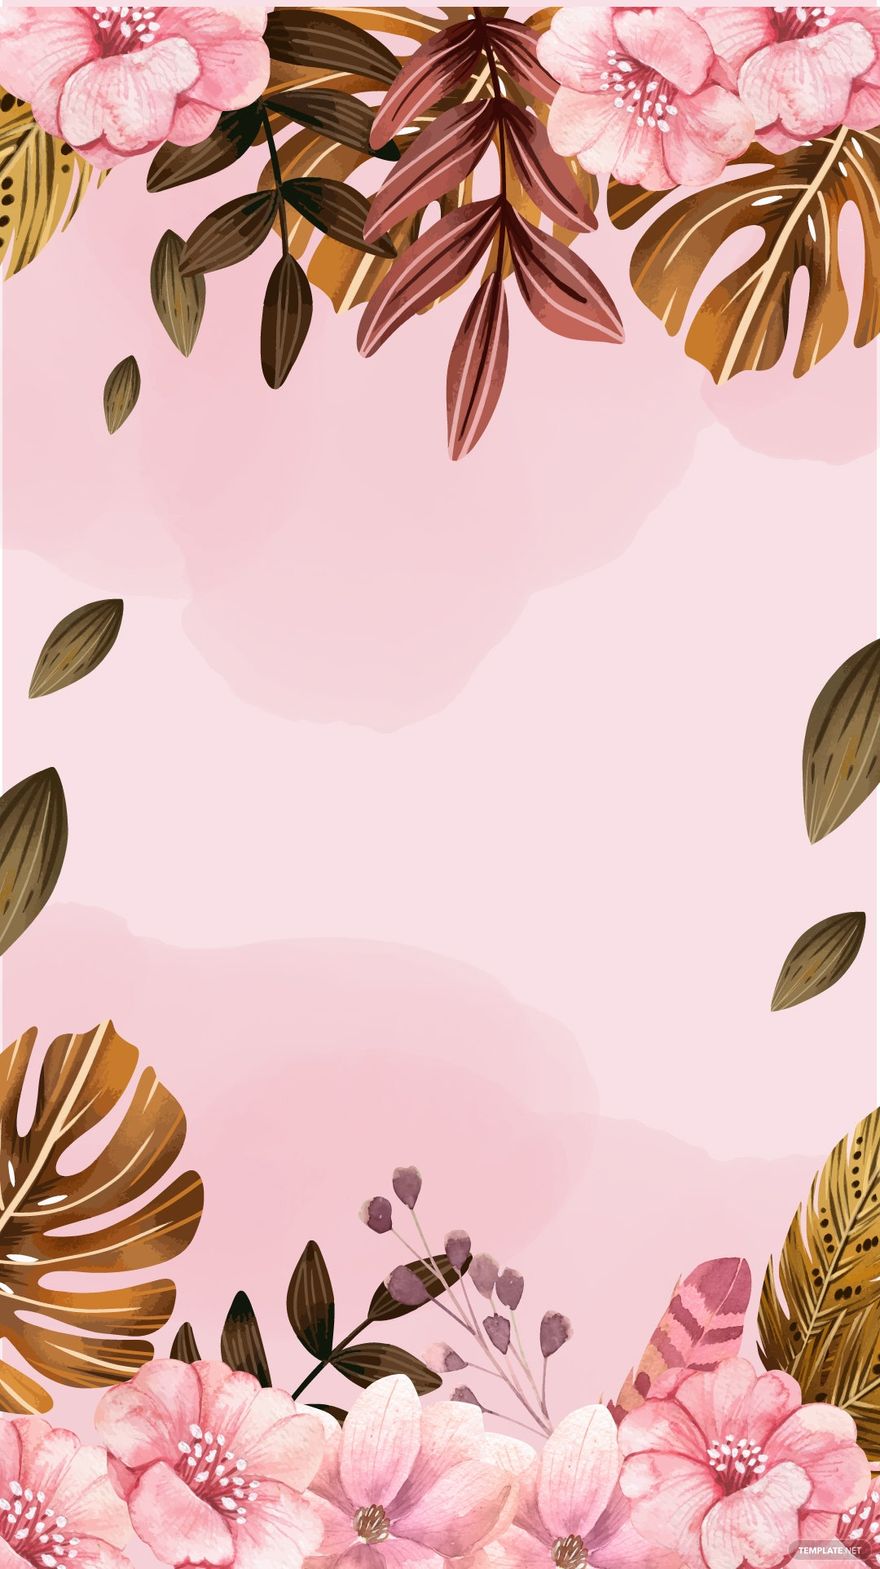 Free Colorful Boho Floral Background in Illustrator, EPS, SVG, JPG